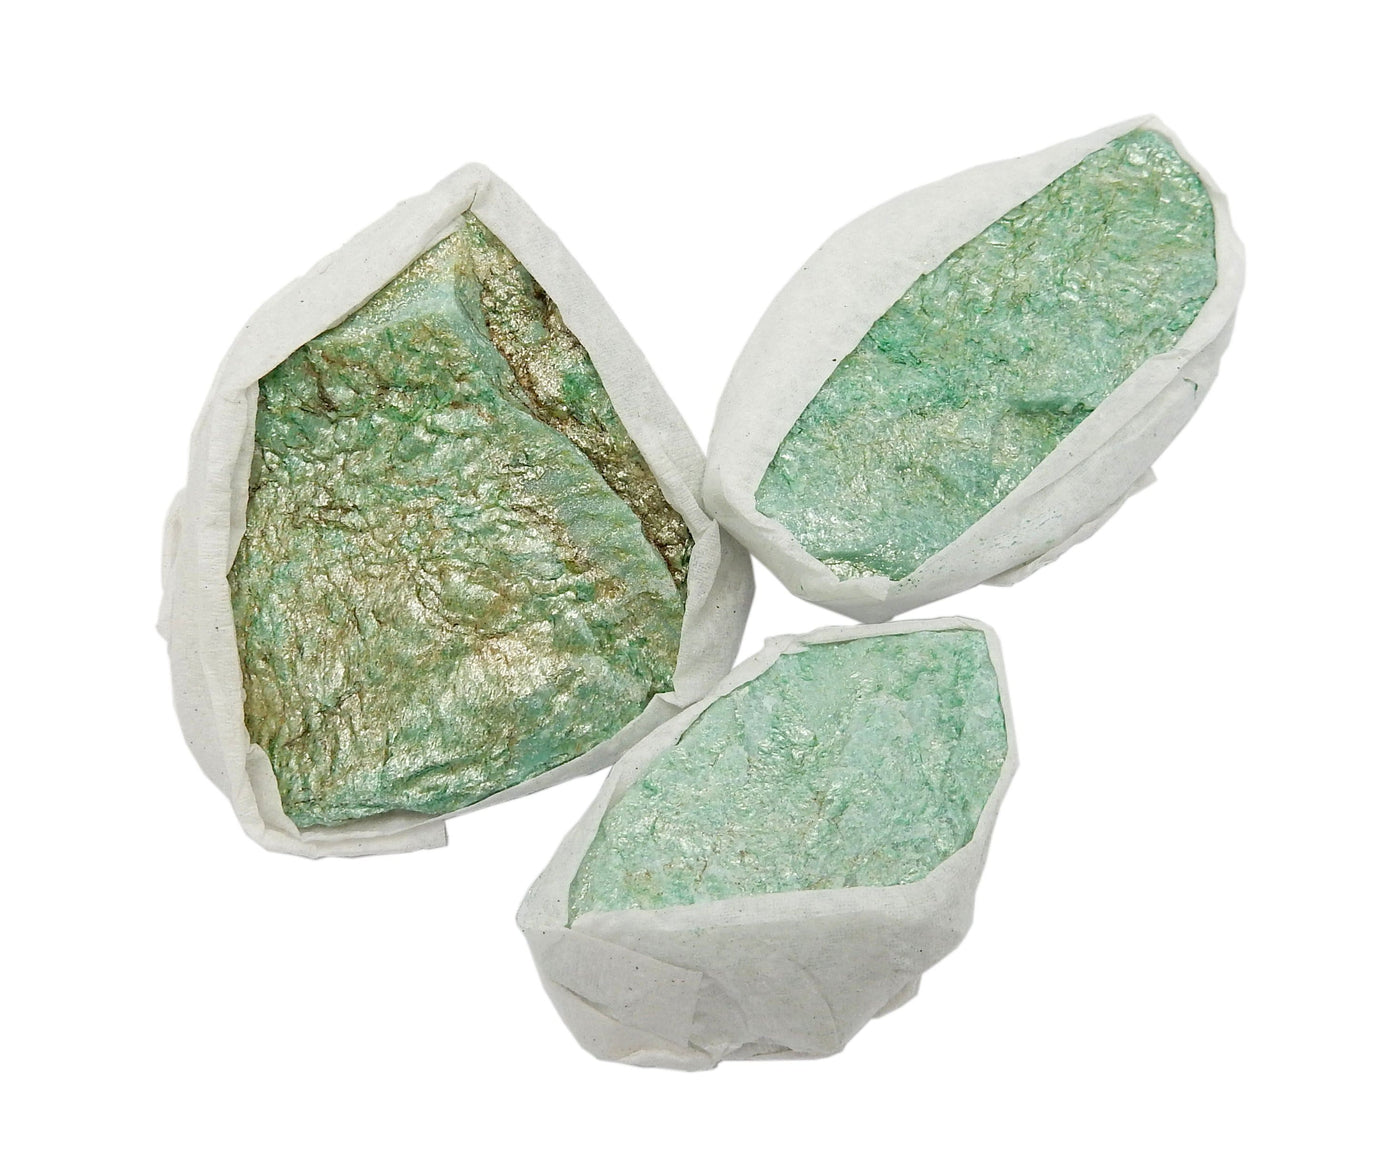 Fuschite Flat Box  - 3 stones out of box